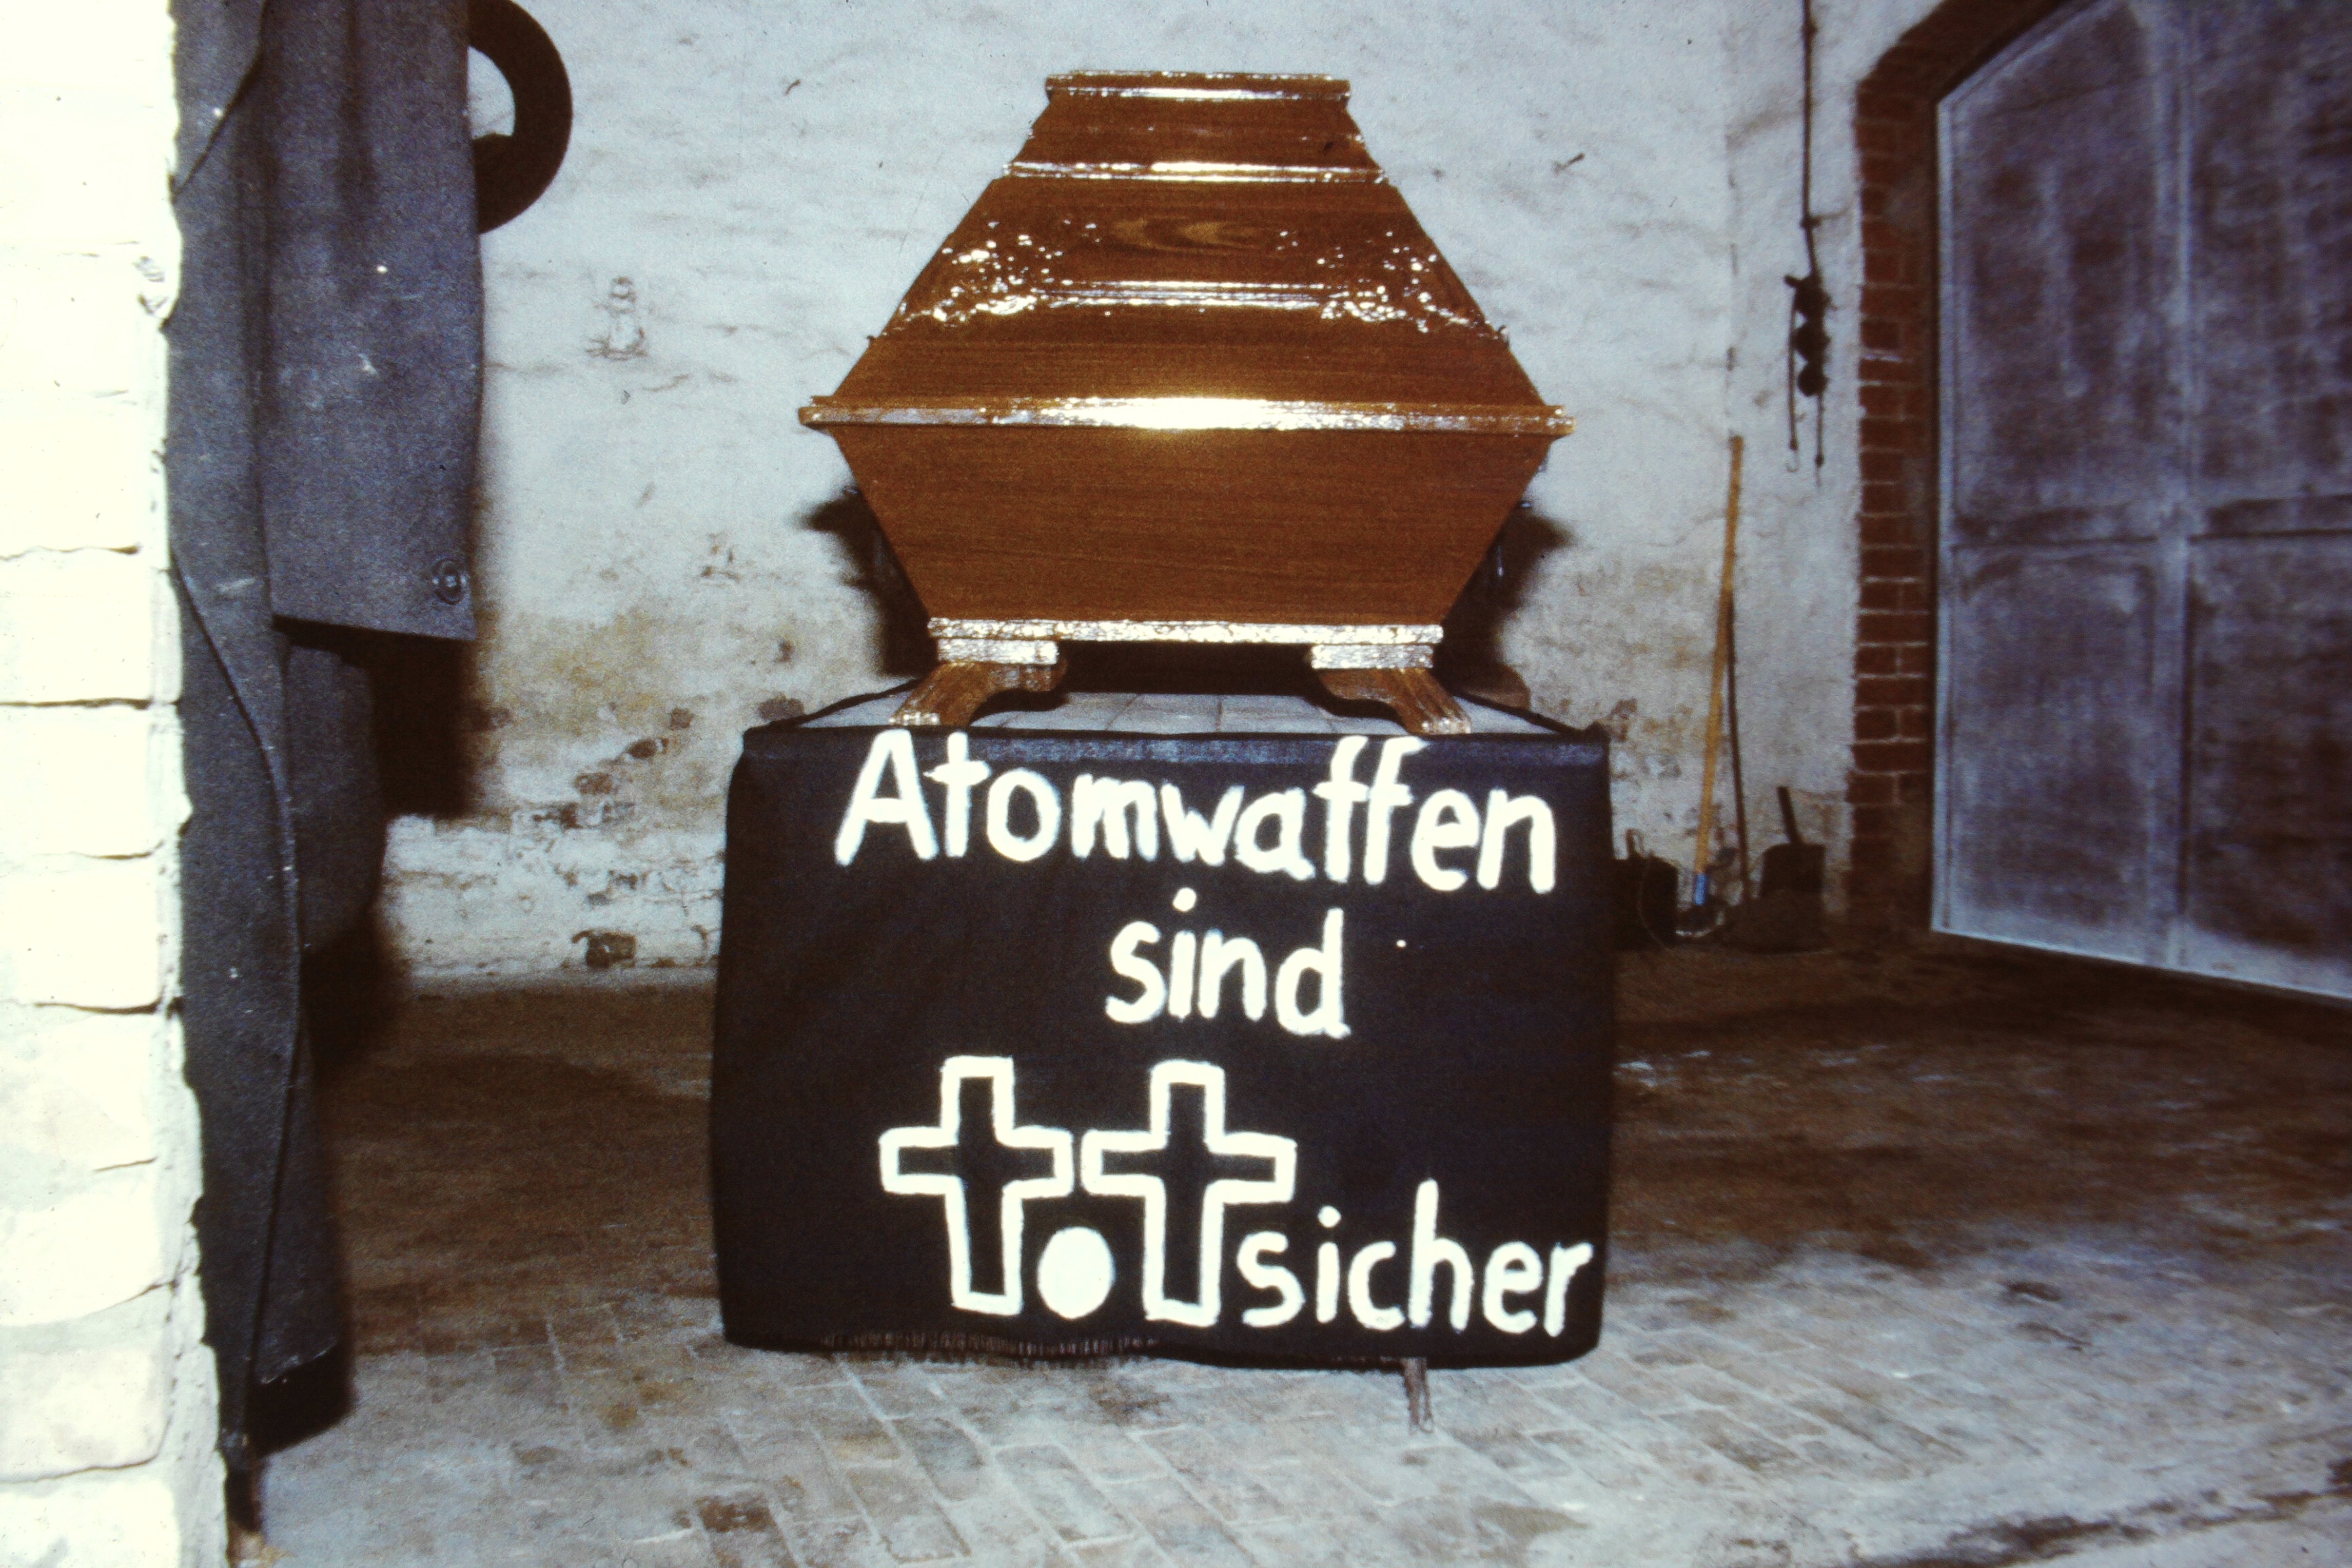 Atomschlagübung "Dosse 83": Sarg mit Beschriftung: "Atomwaffen sind totsicher" (DDR Geschichtsmuseum im Dokumentationszentrum Perleberg CC BY-SA)